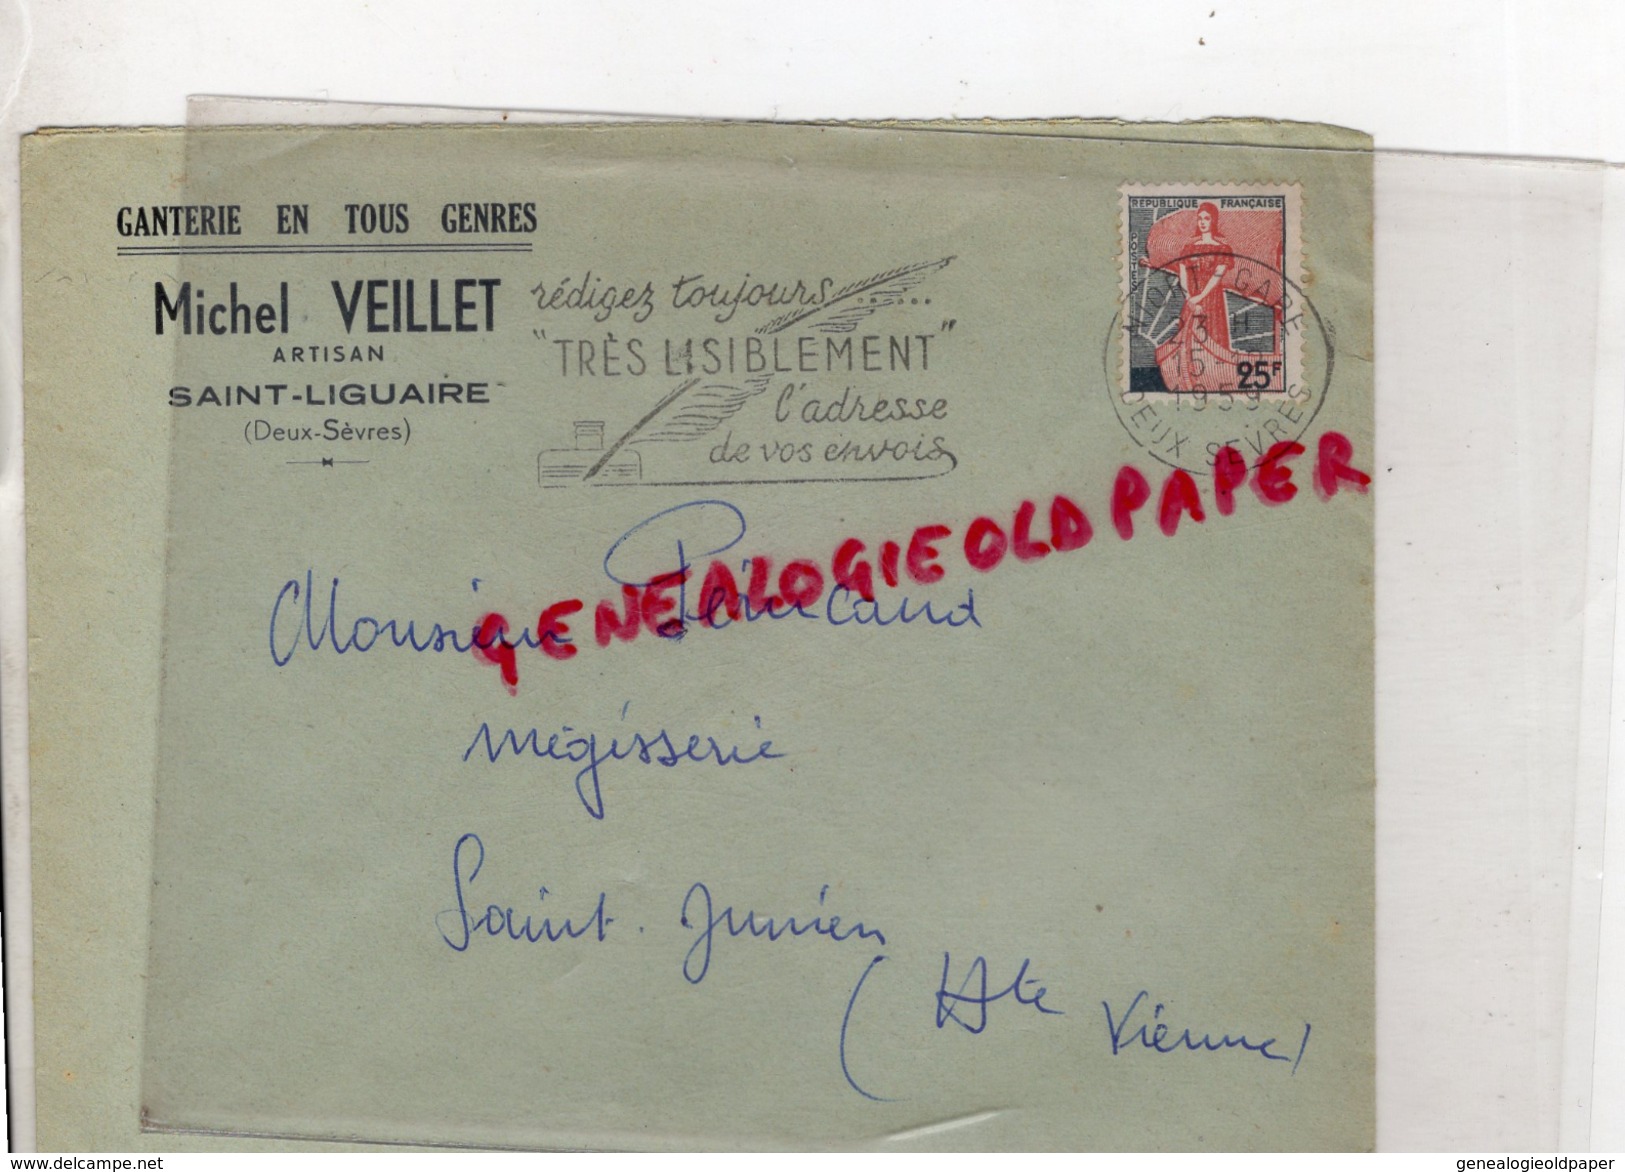 79 - SAINT LIGUAIRE - ENVELOPPE GANTERIE MICHEL VEILLET- ARTISAN - A M. PERUCAUD MEGISSERIE ST SAINT JUNIEN- 1953 GANTS - 1950 - ...